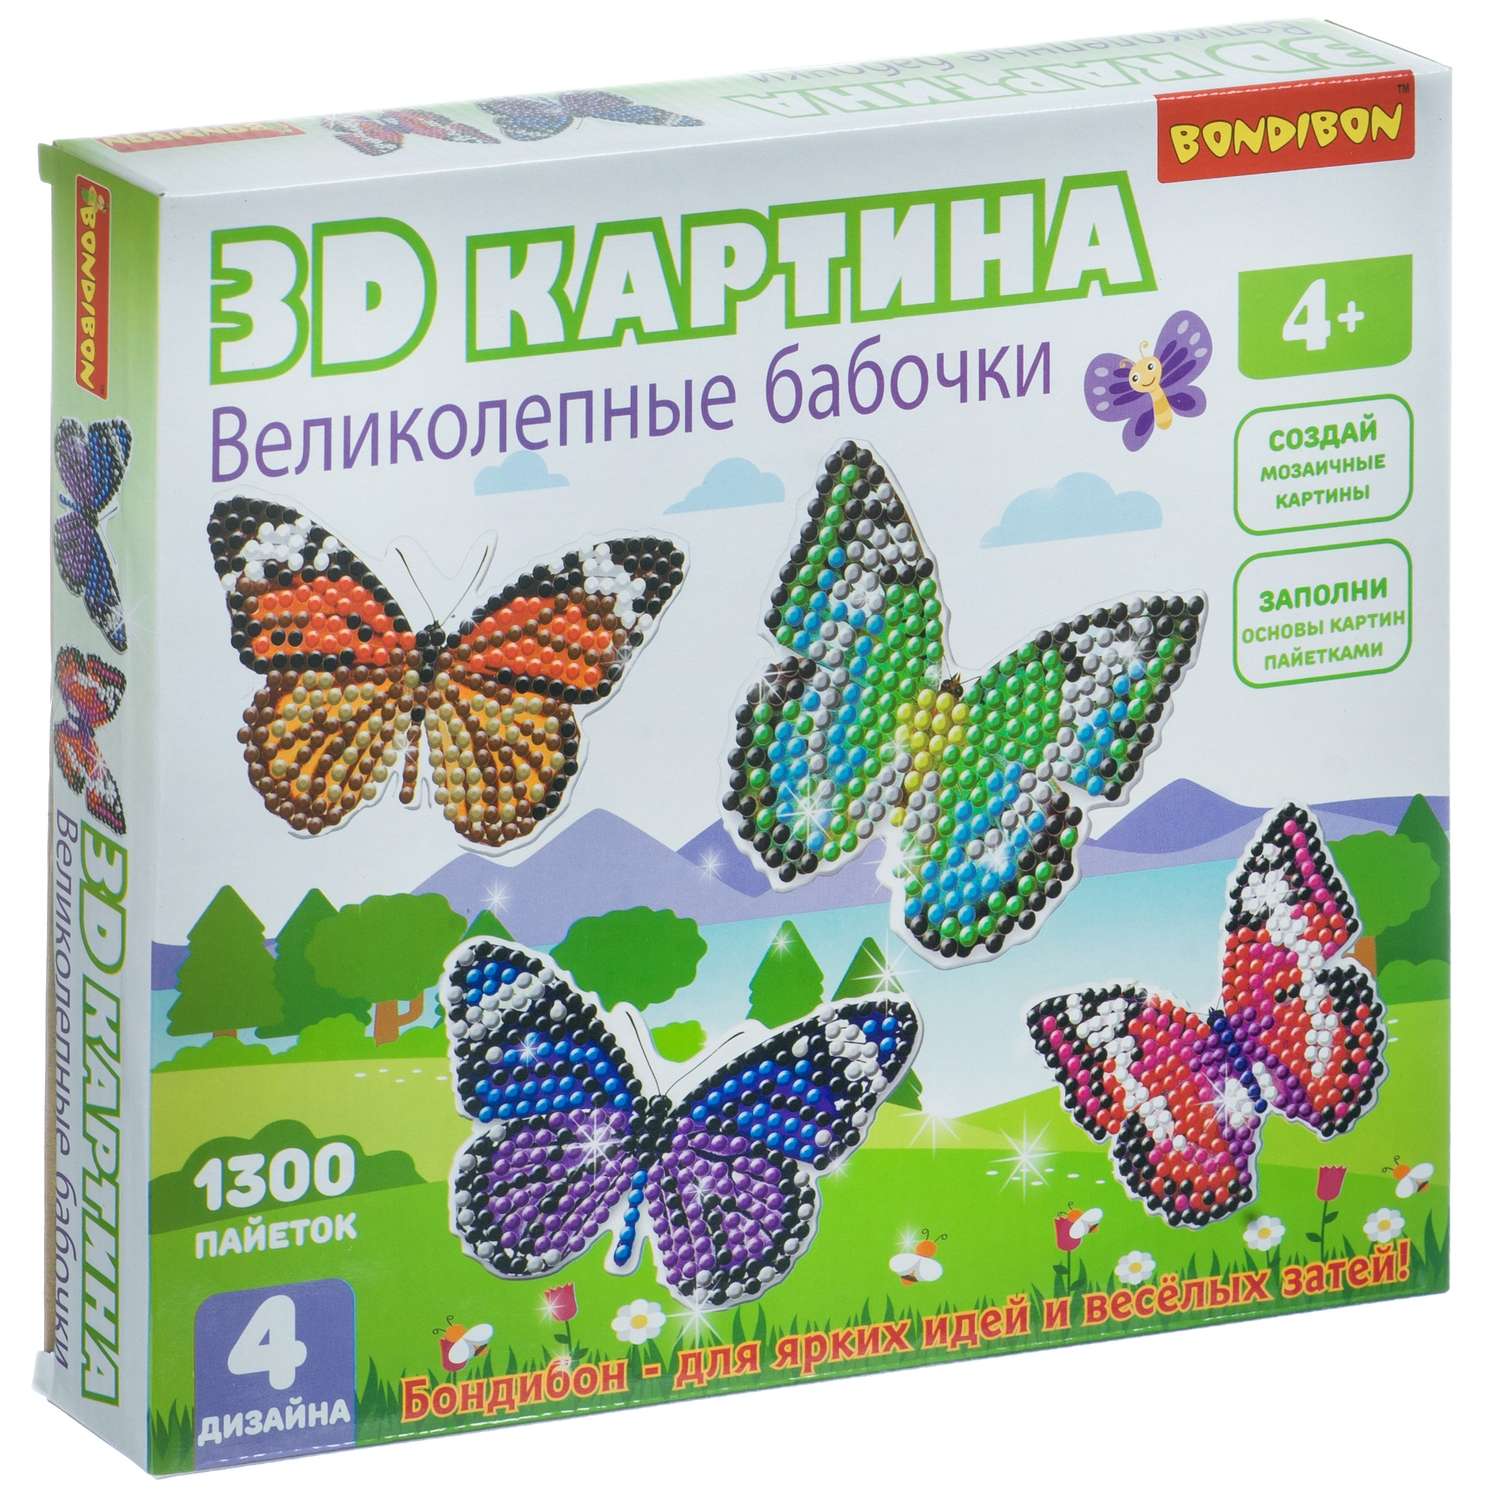 Набор для творчества BONDIBON 3D картина Великолепные бабочки 4 дизайна - фото 3